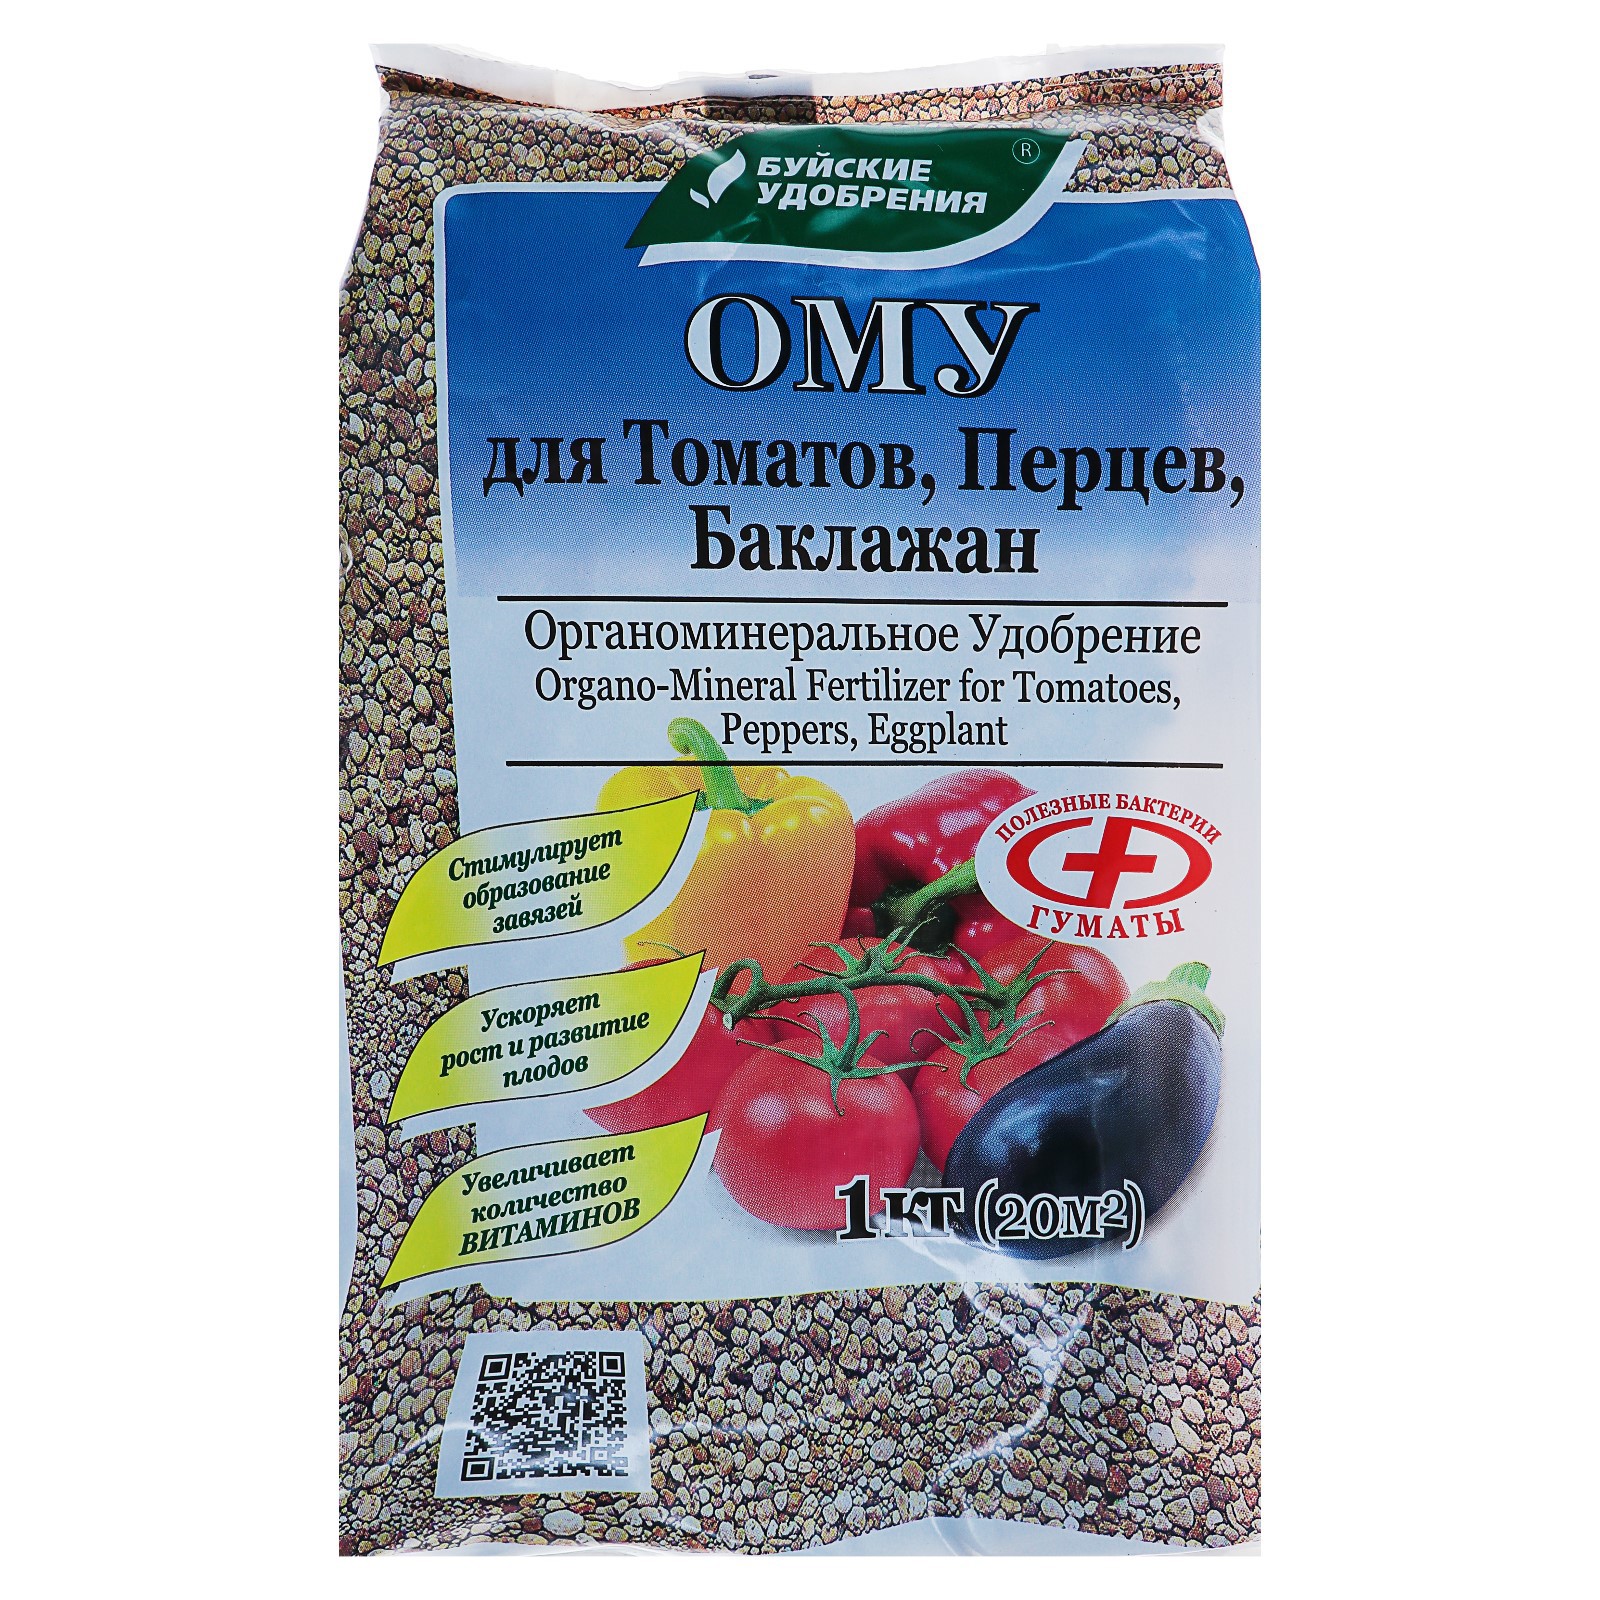 91032106 Удобрение органоминеральное для томатов перцев баклажан 1 кг STLM-0449969 БУЙСКИЕ УДОБРЕНИЯ